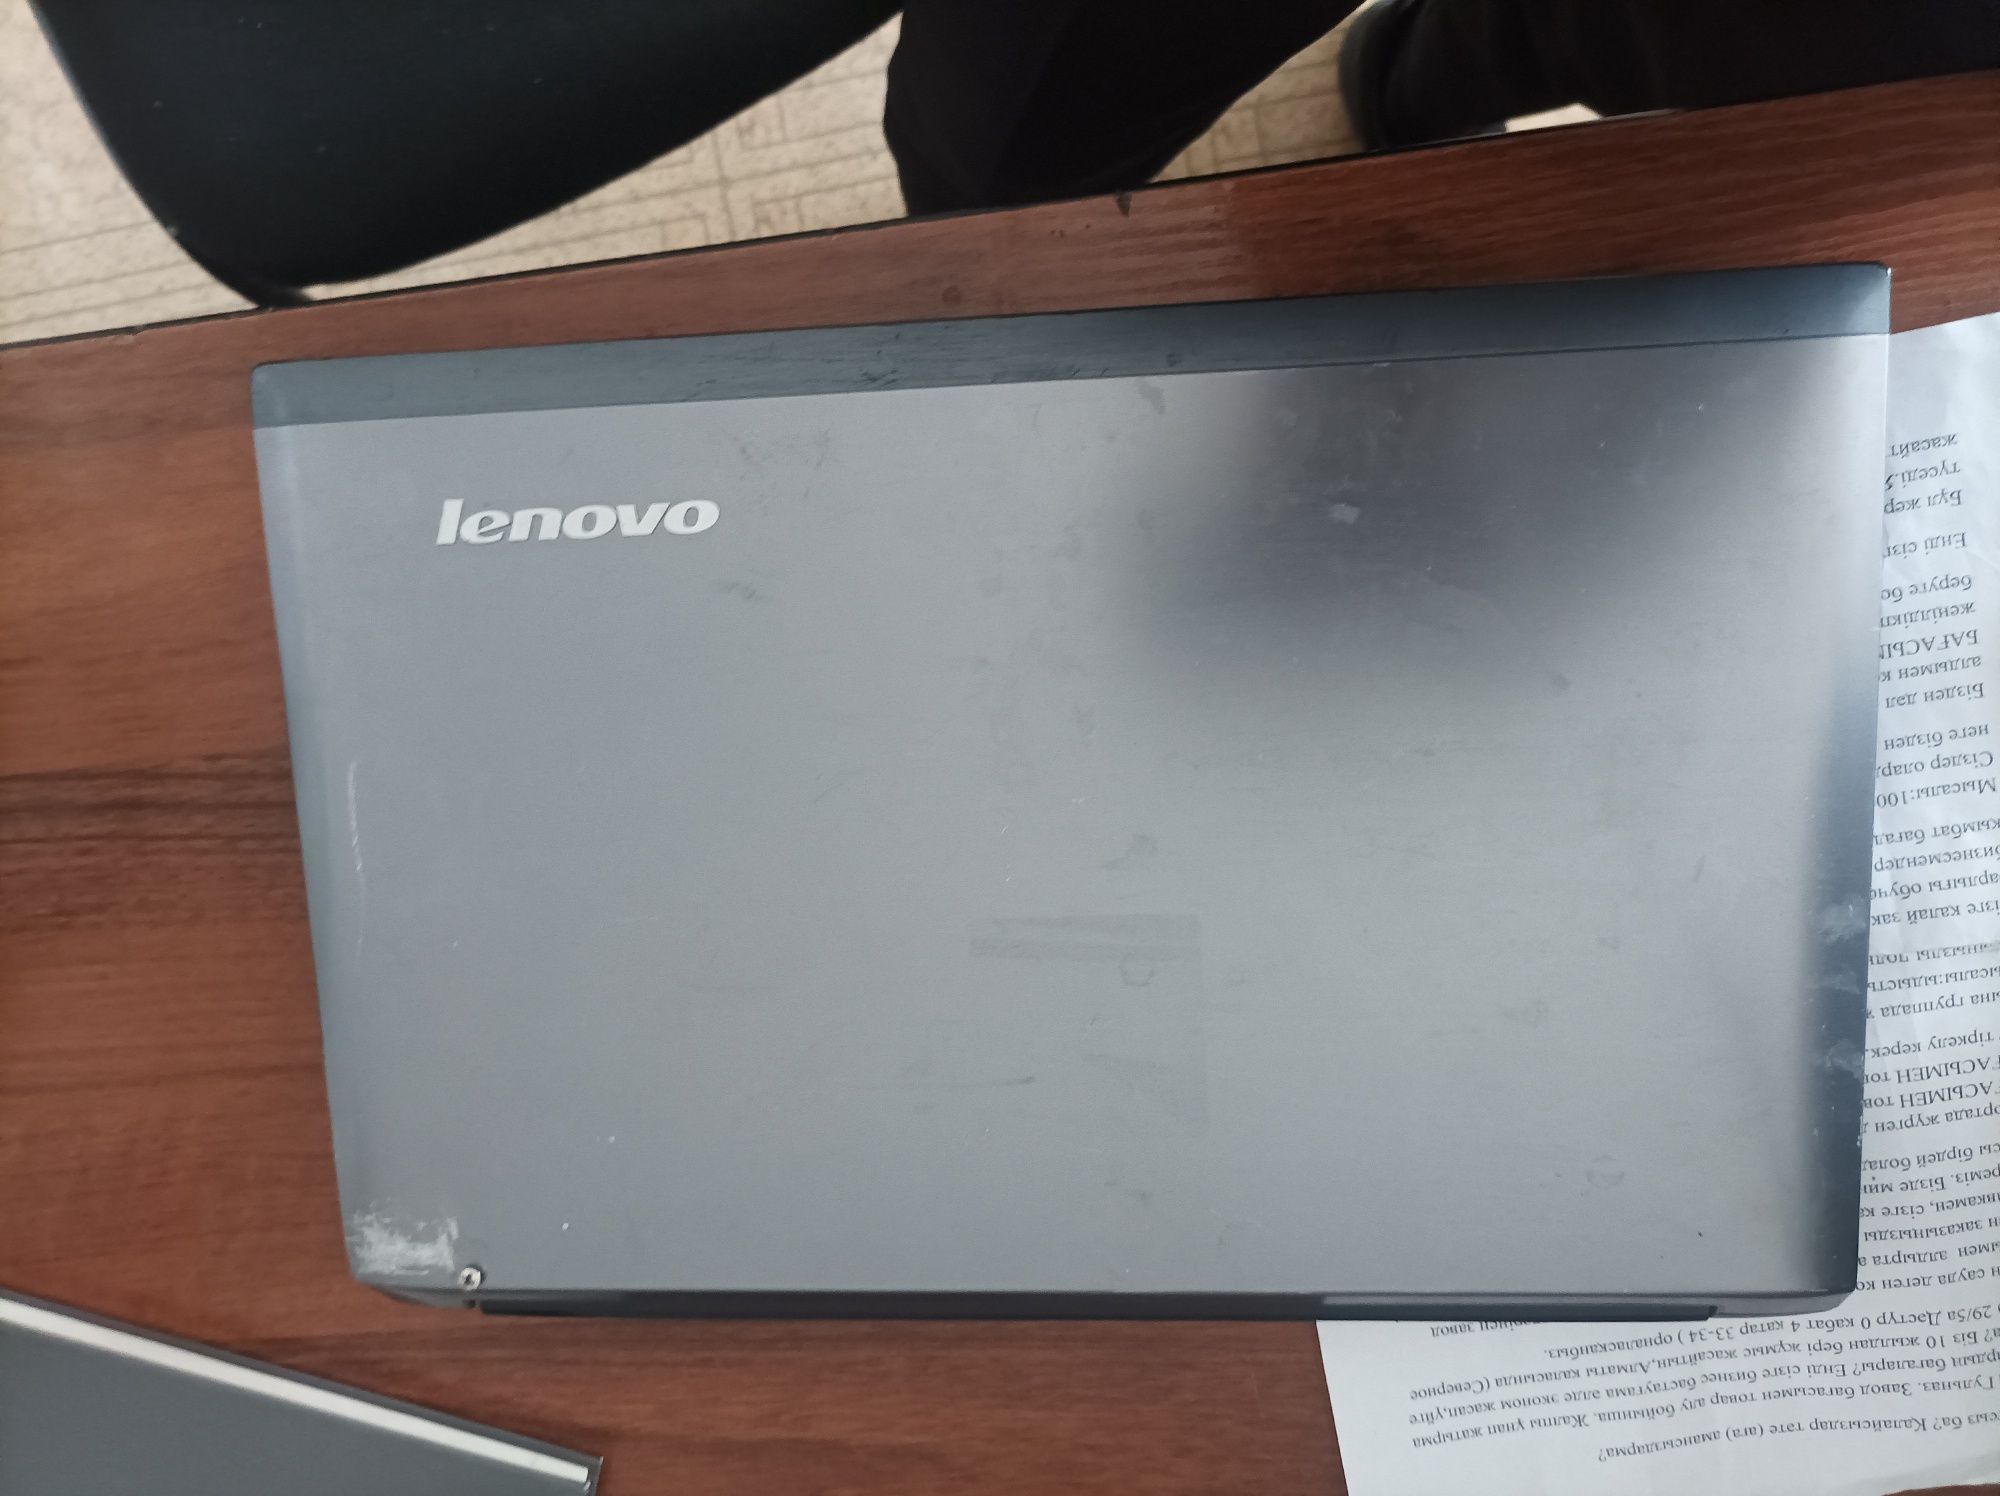 Ноутбук Lenovo v570 и комплектующие